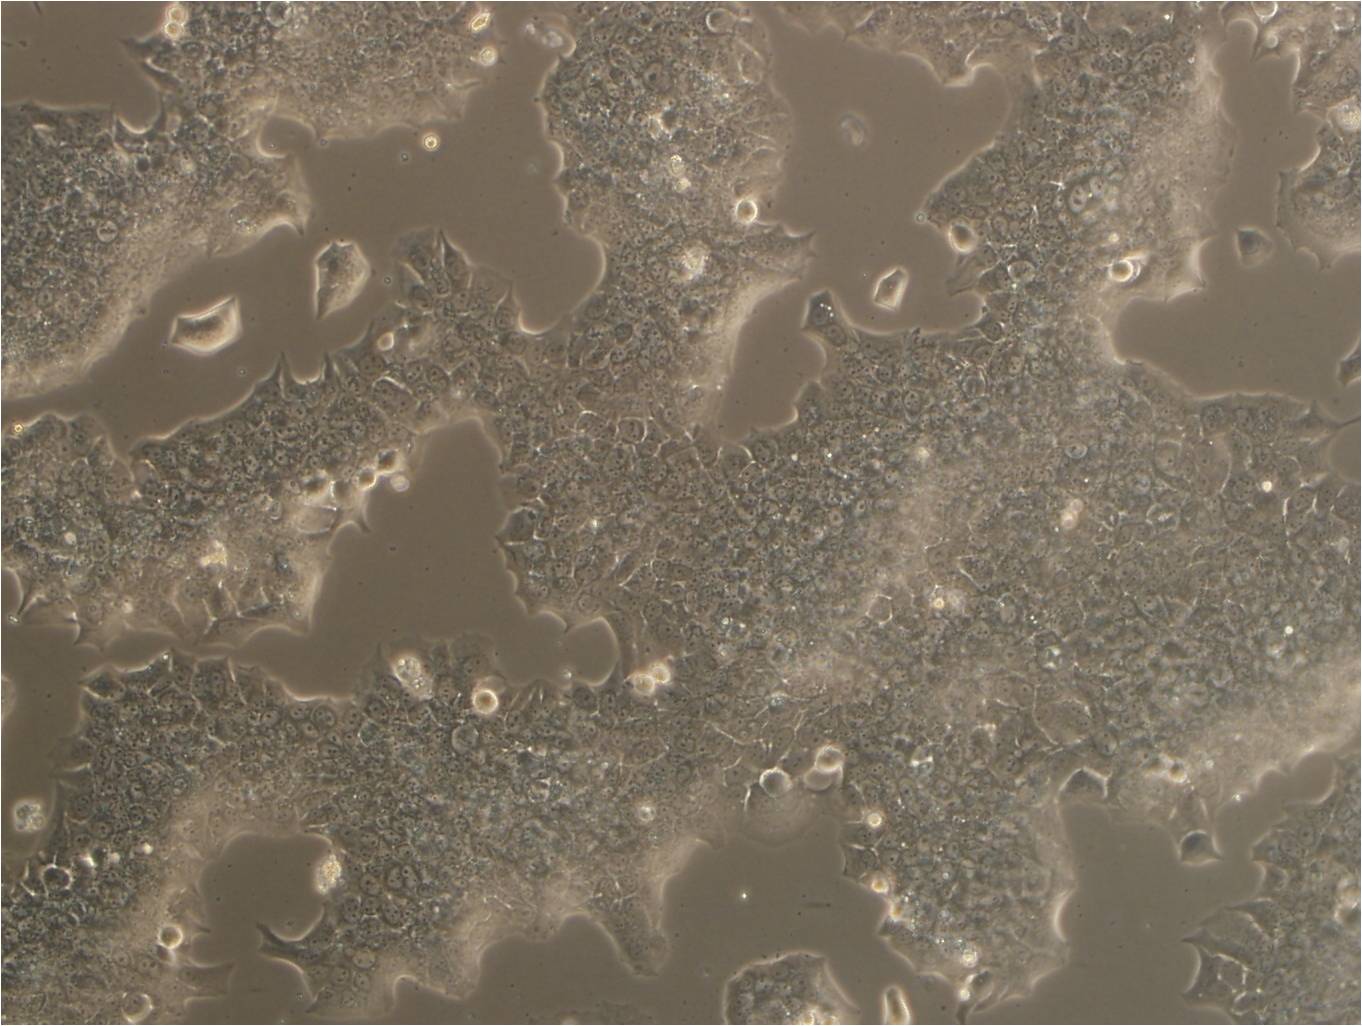 C-643 epithelioid cells人甲状腺癌细胞系,C-643 epithelioid cells